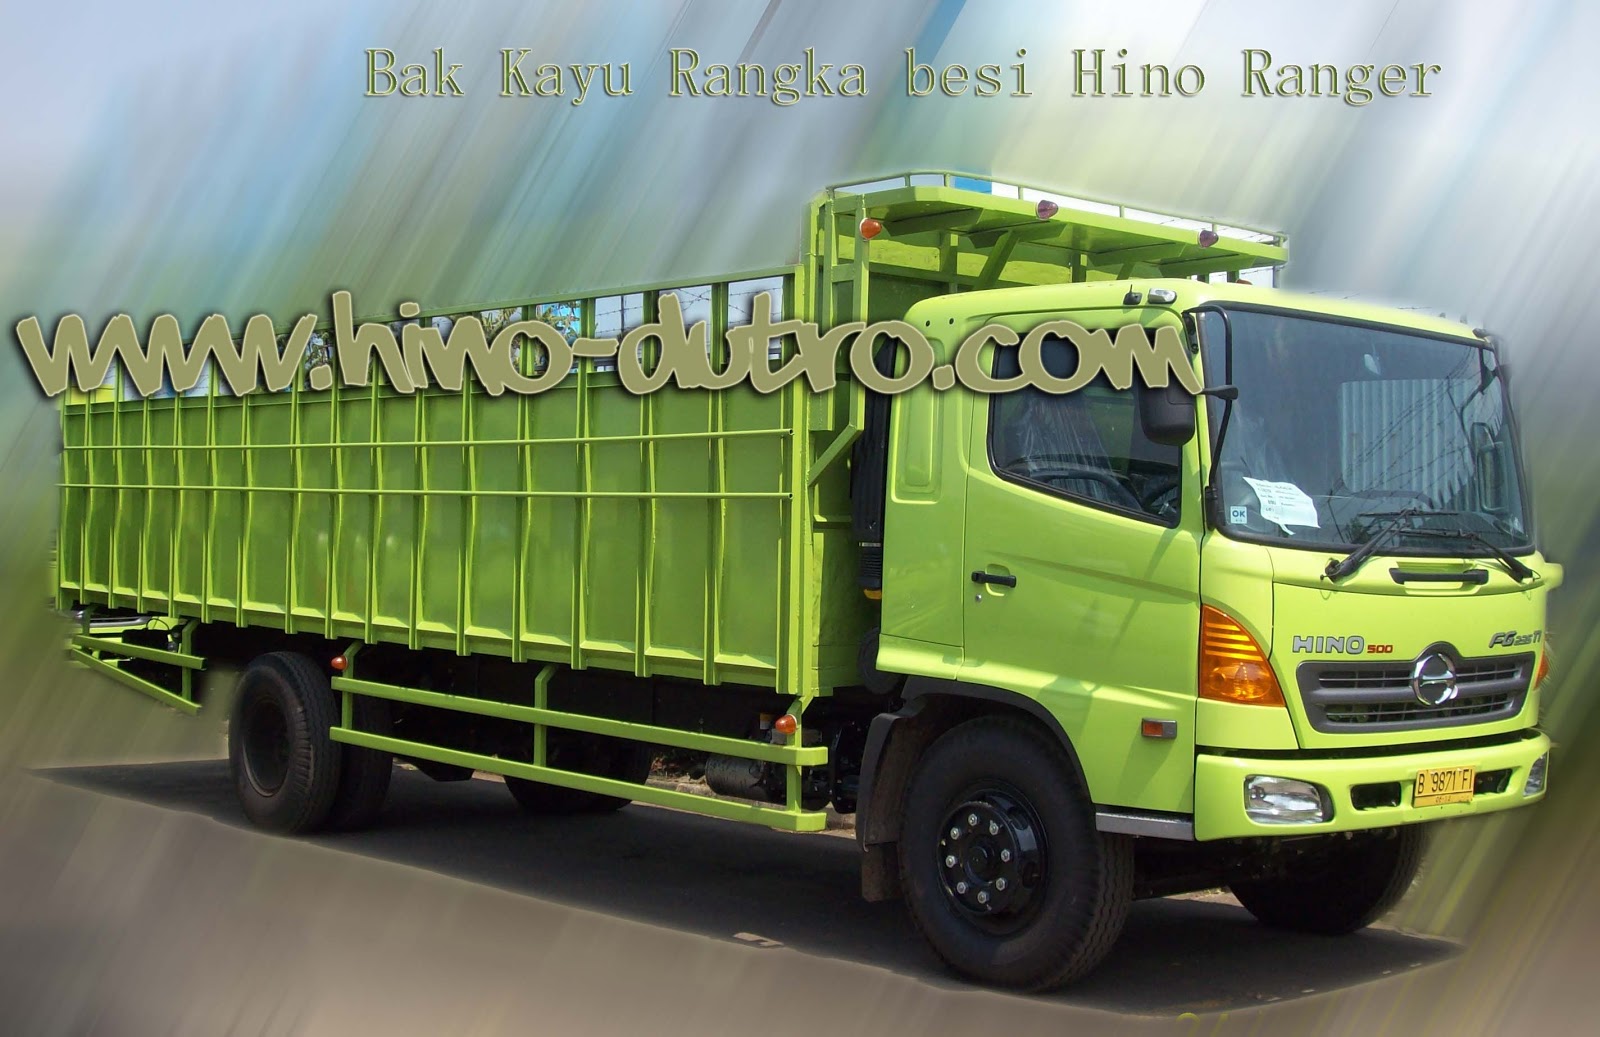  Truk  Bak  Kayu Hino  Sales Truck dan Bus Hino  Authorized 